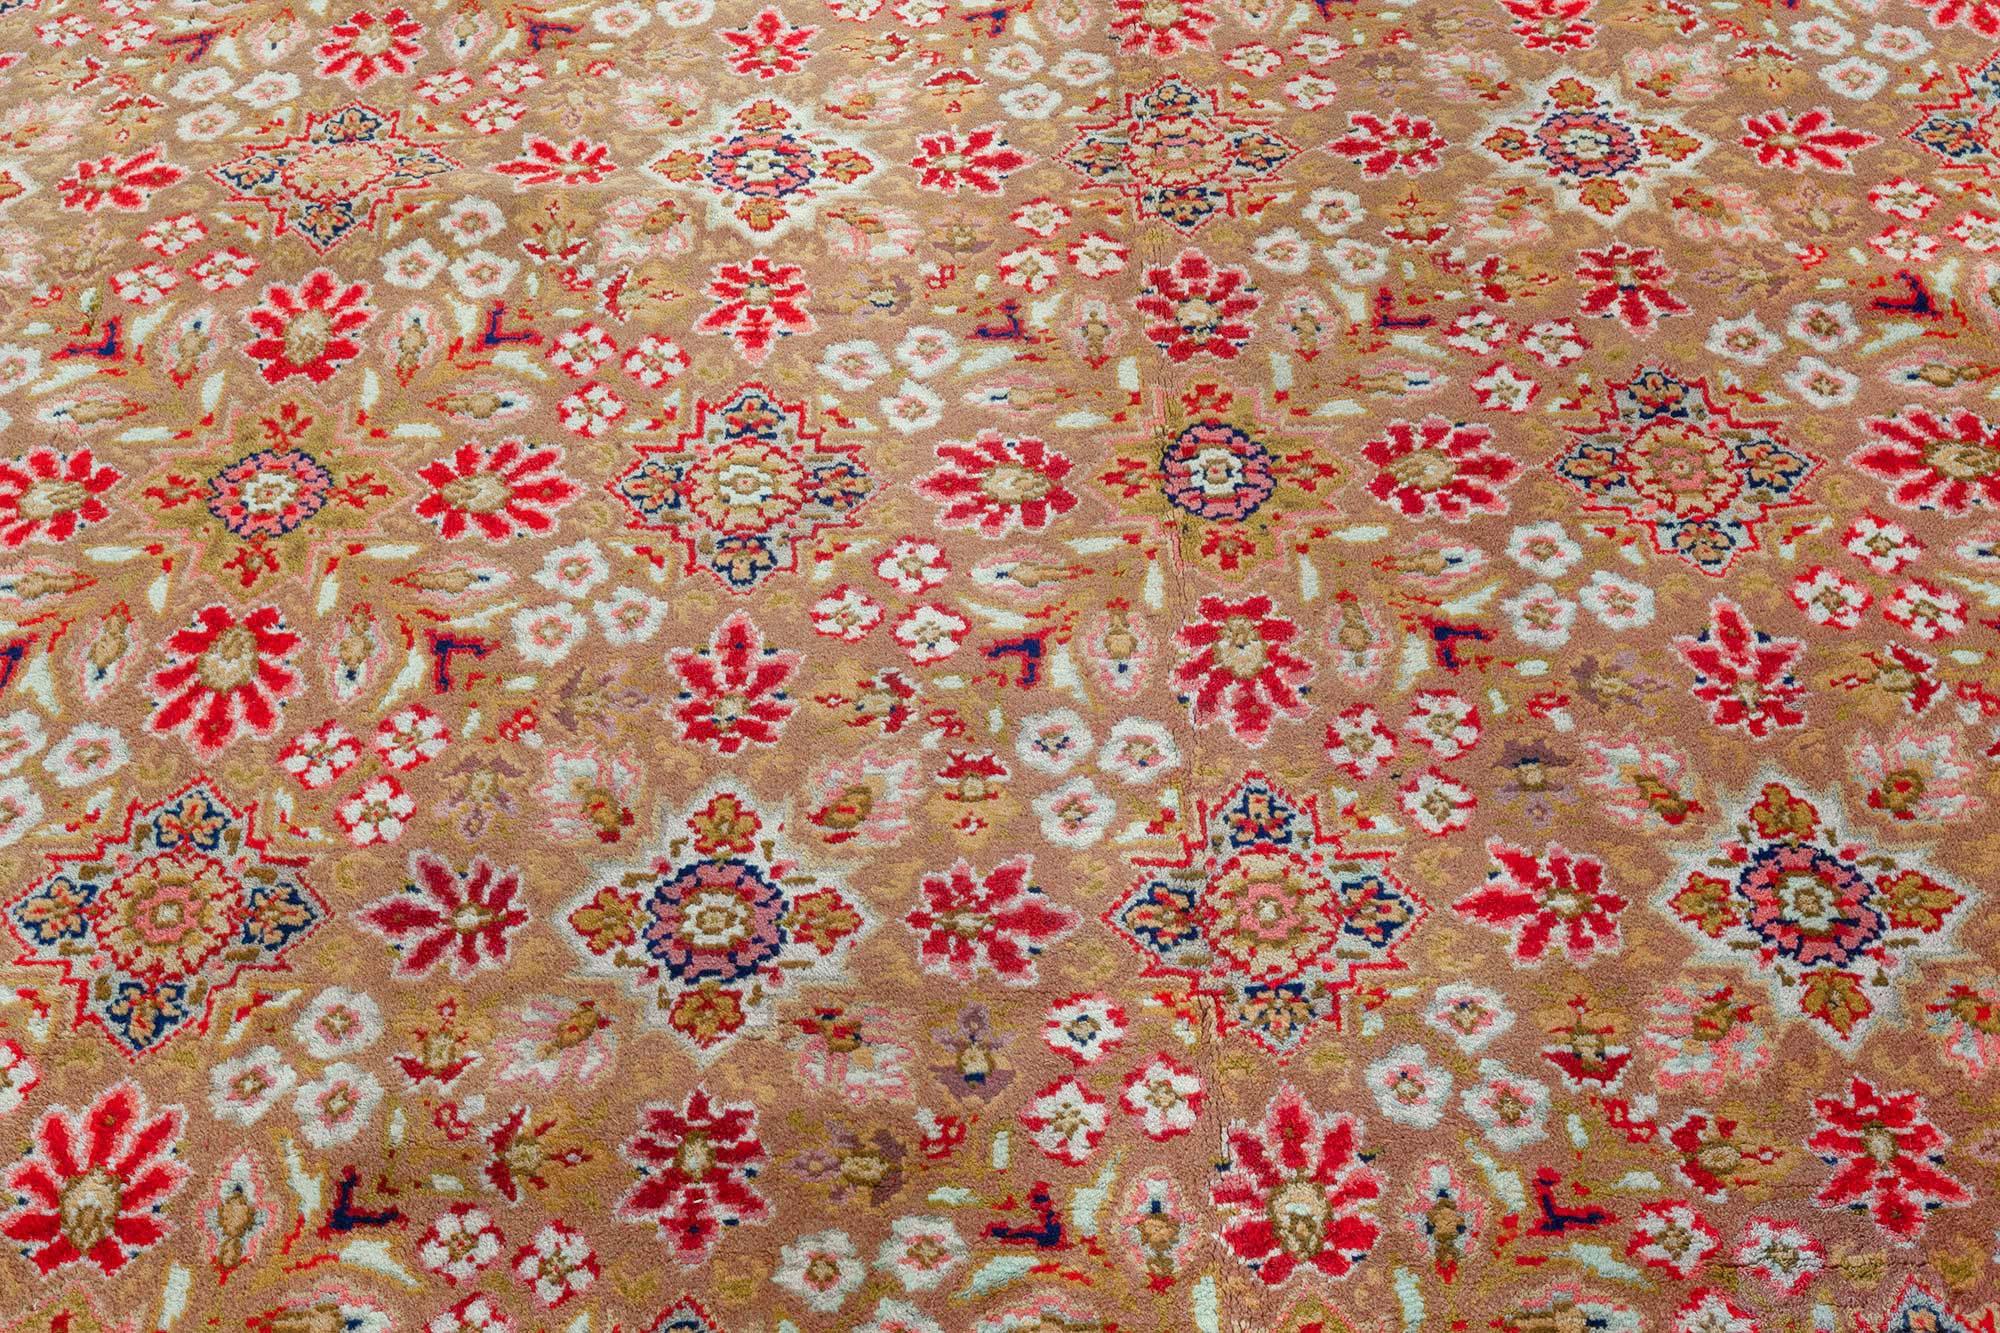 Ancien tapis anglais Wilton (Taille ajustée)
Taille : 386 × 543 cm (12'8